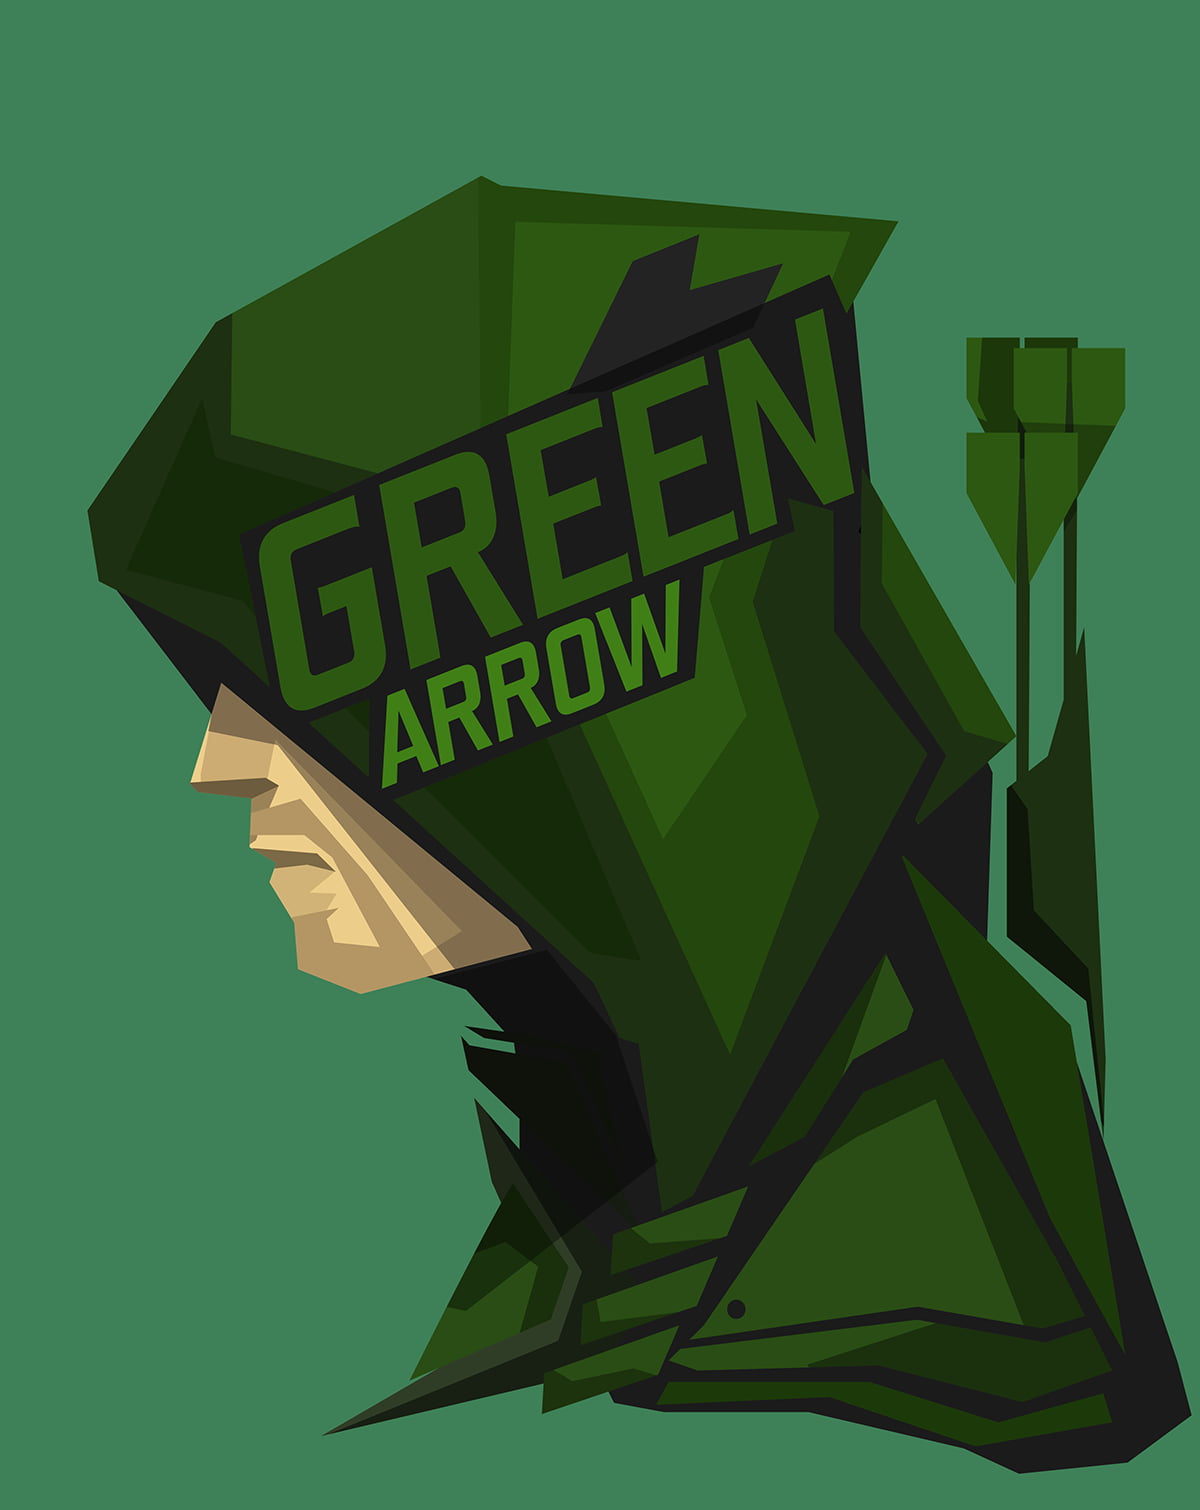 Green Arrow illustration, superhero, DC Comics, green color, sign